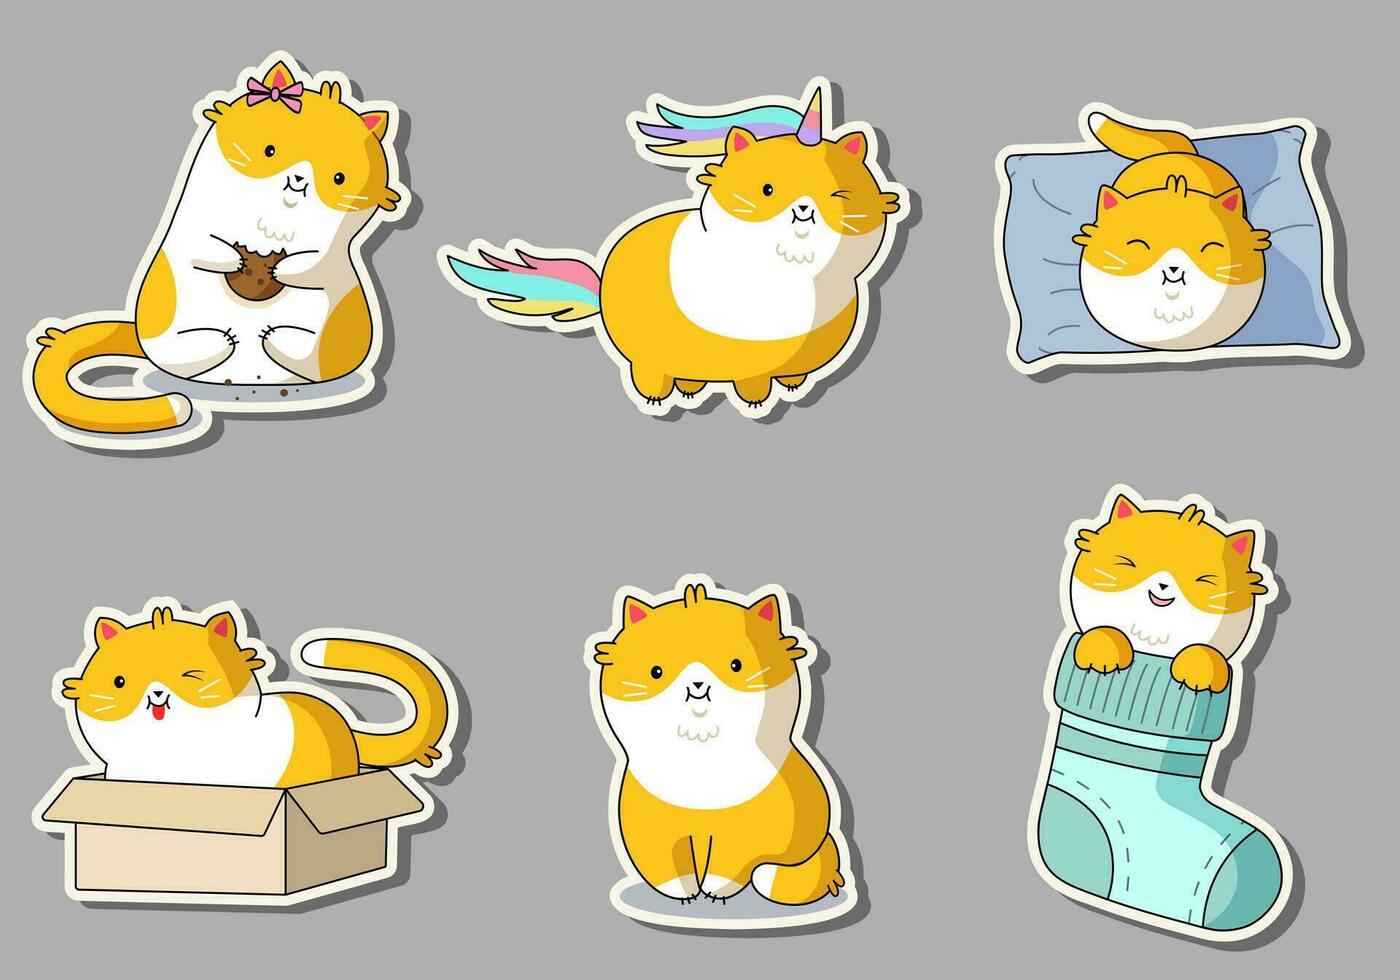 linda kawaii gatos en gracioso poses - vector colocar. gracioso dibujos animados gatos impresión o pegatina diseño. adorable kawaii mascota animales